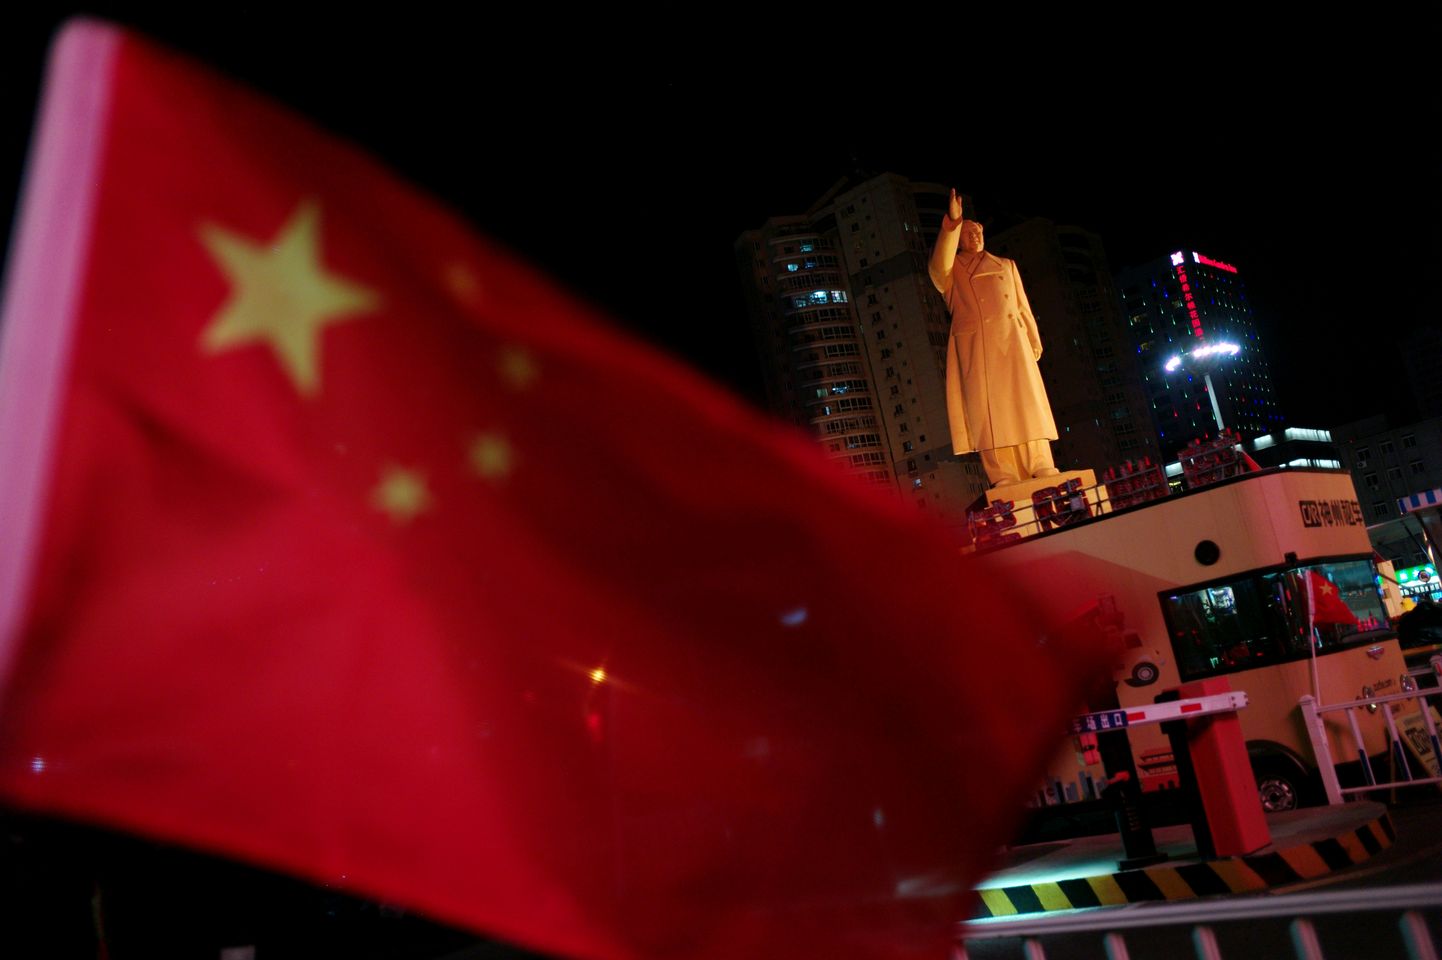 Hiina lipp Mao Zedongi ausamba lähedal. Foto on illustratiivne.